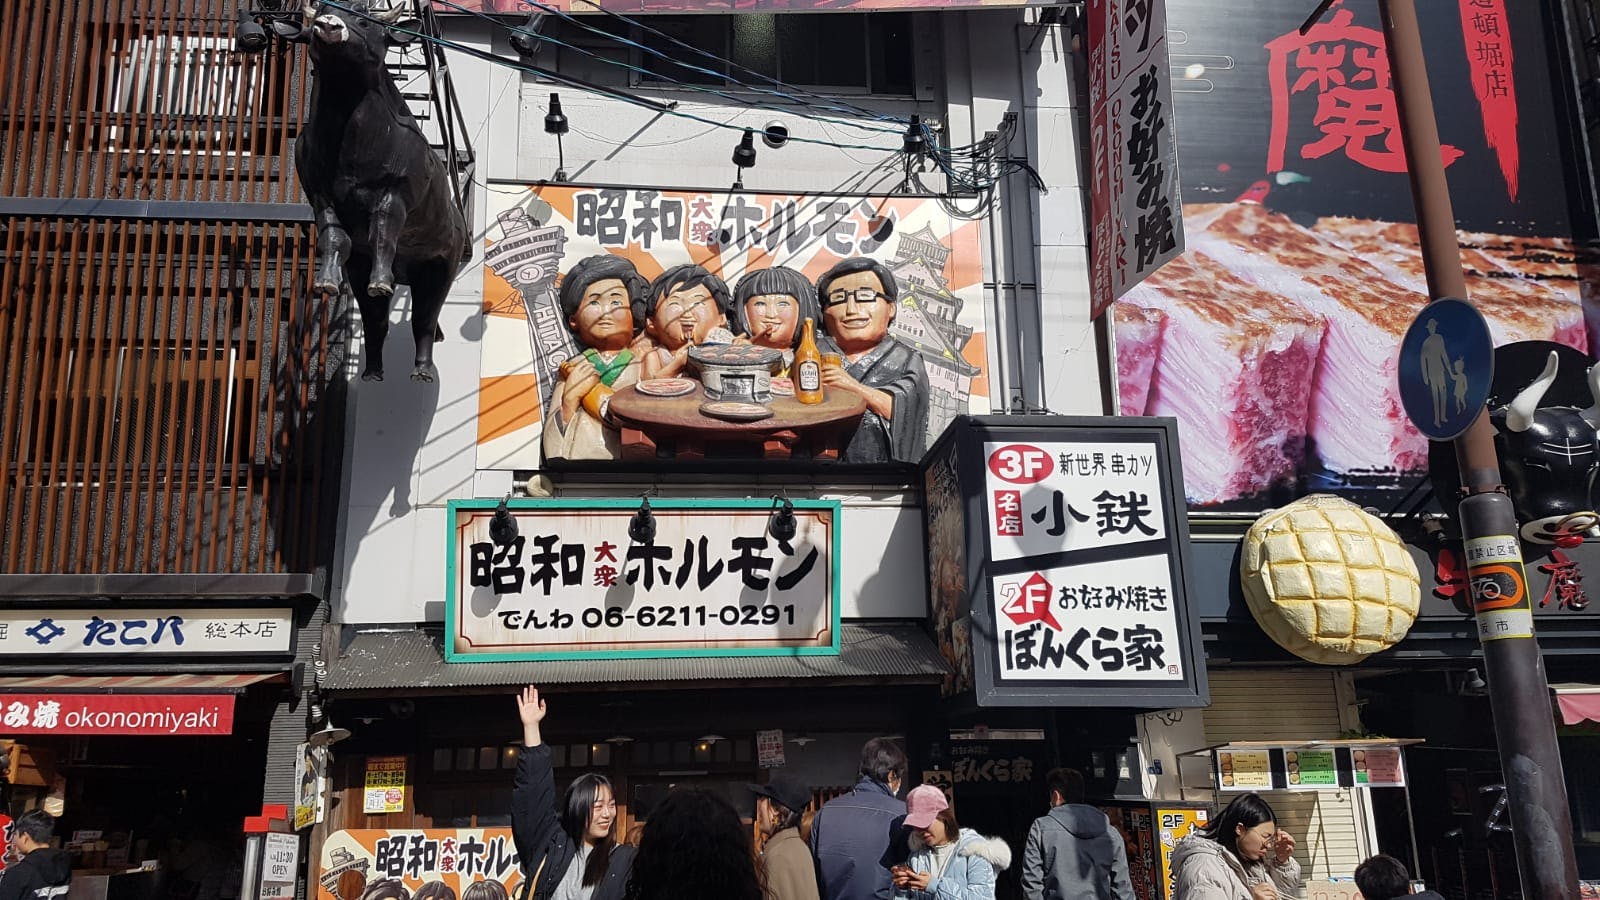 Comida japonesa popular em Osaka, origens, jogo e passeio pela cidade